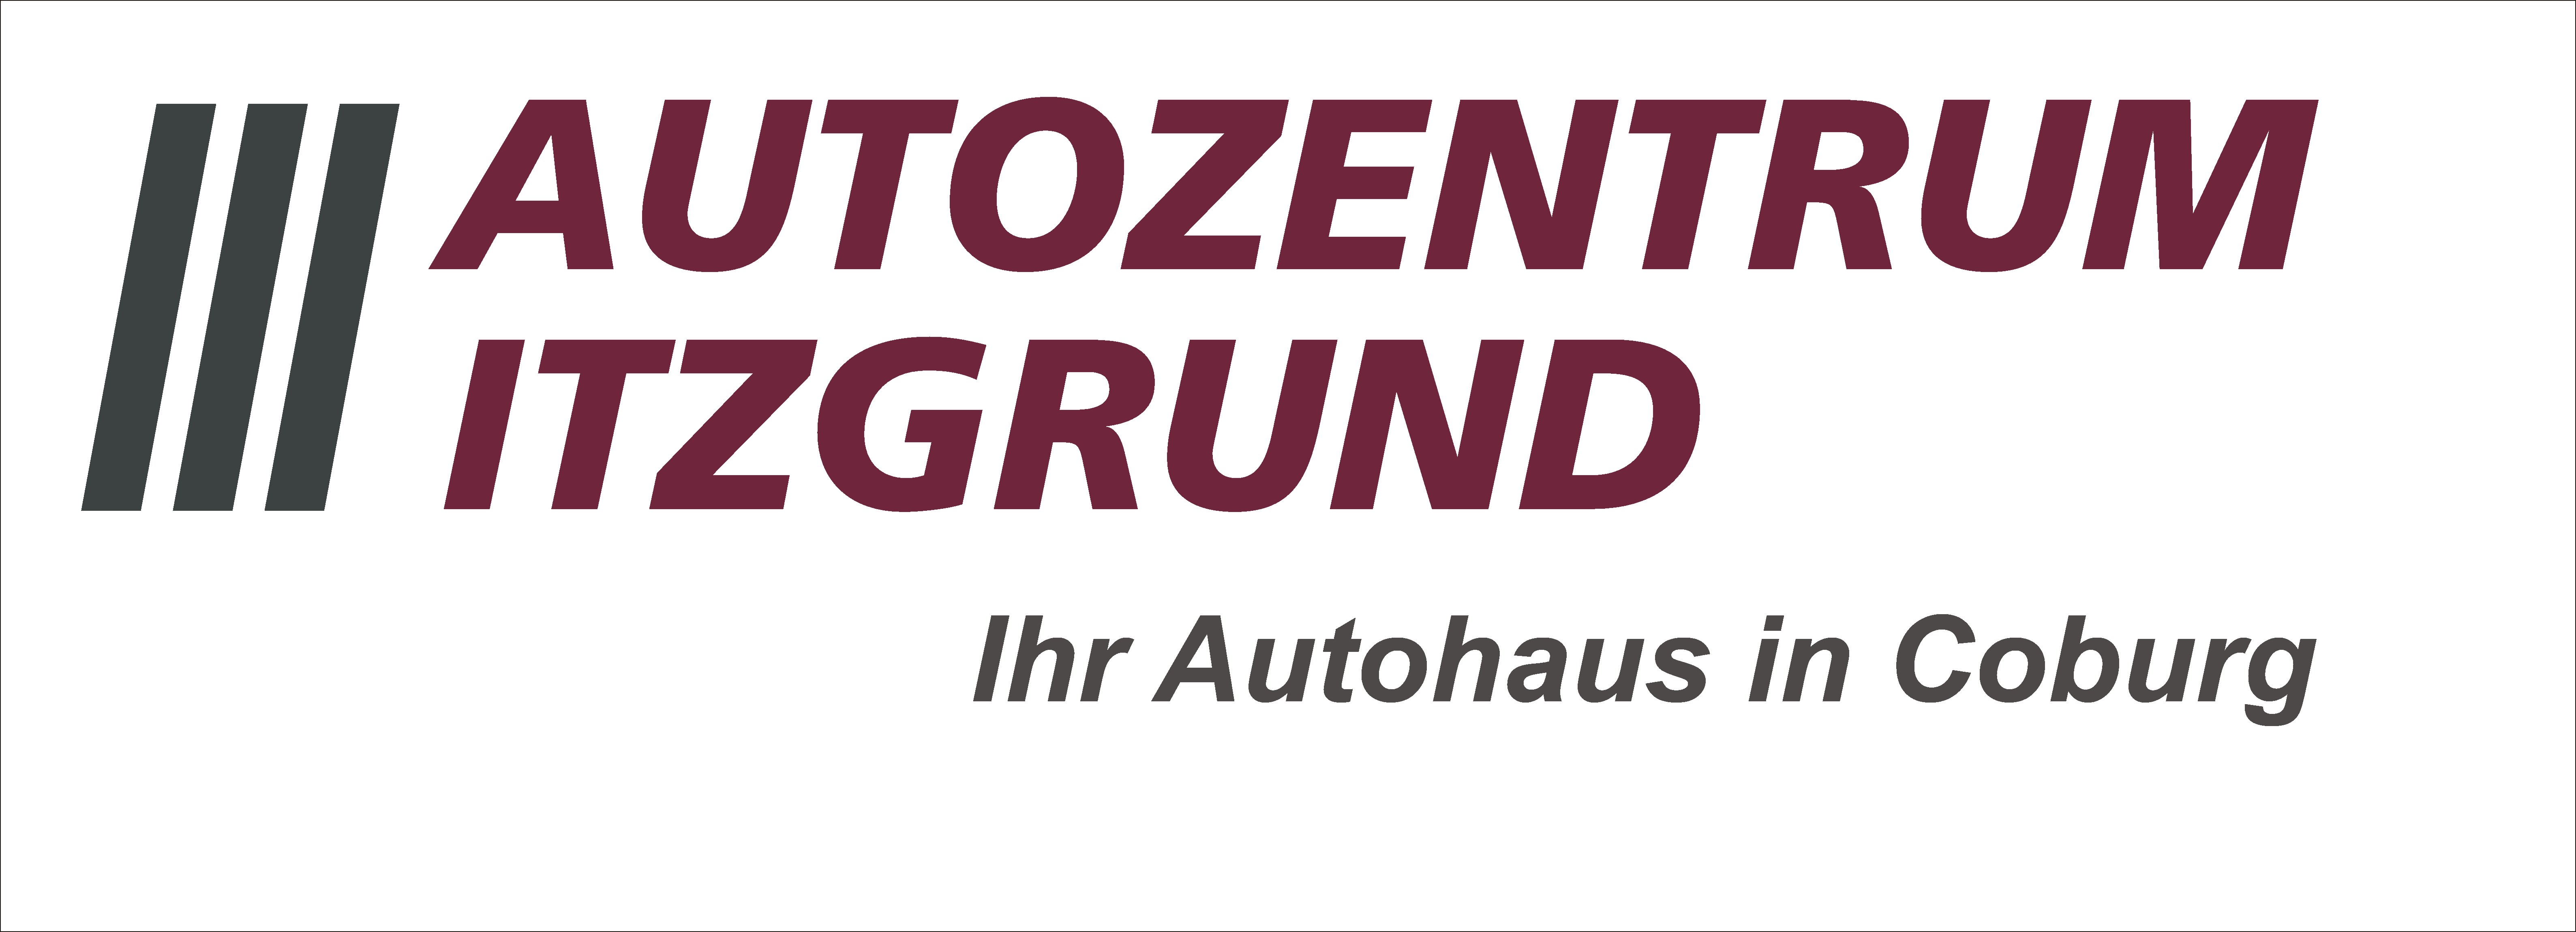 Autozentrum Itzgrund GmbH&Co.KG